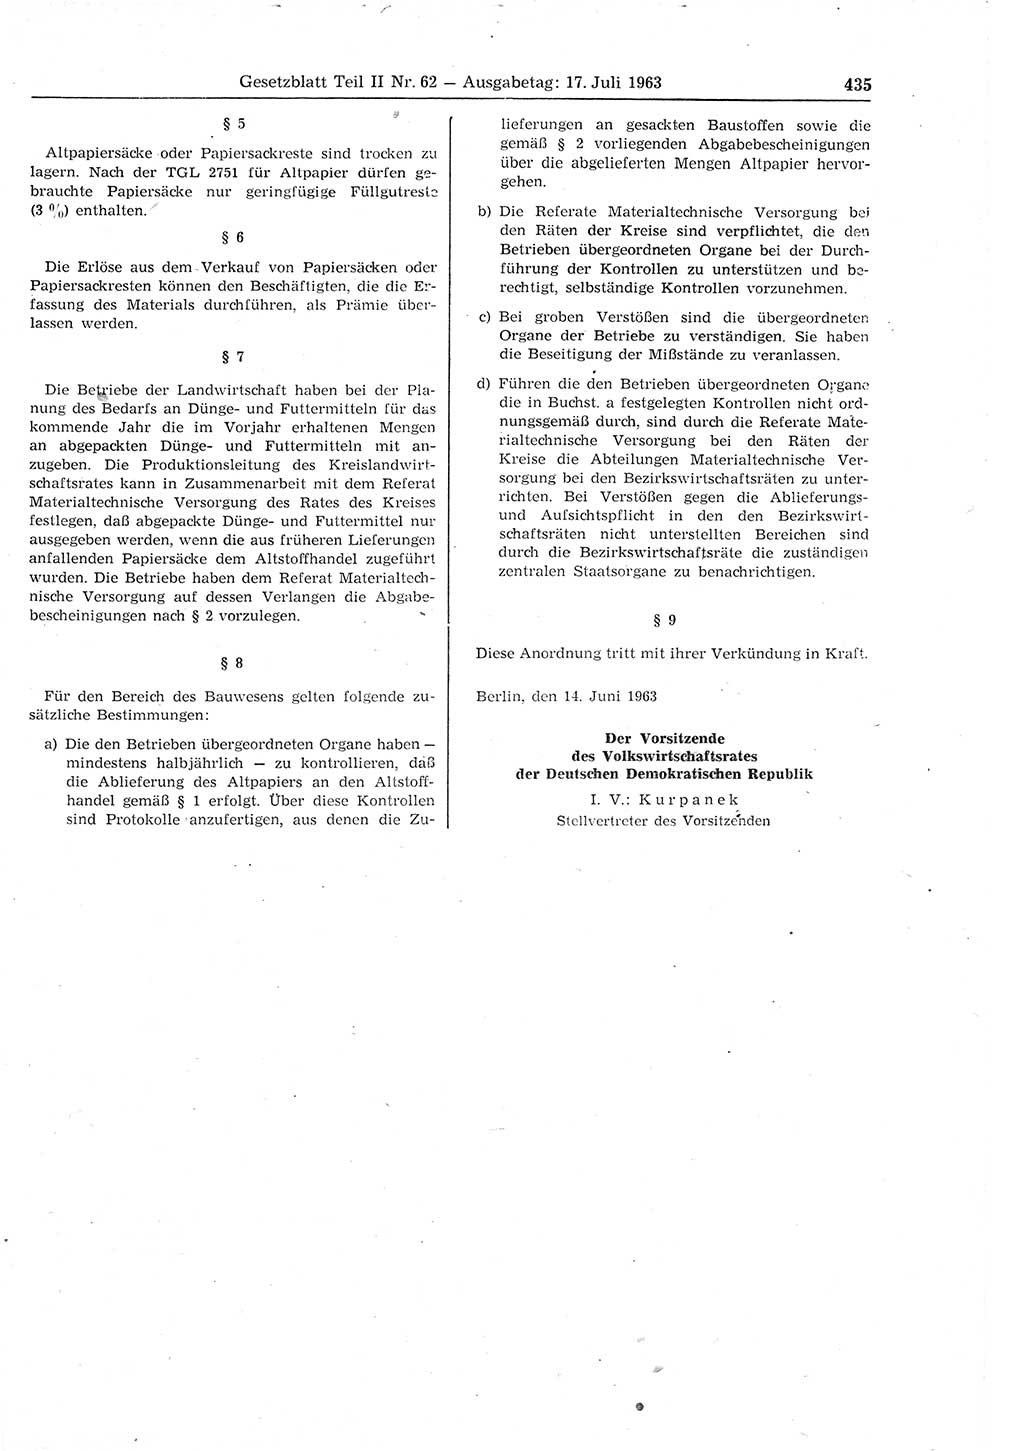 Gesetzblatt (GBl.) der Deutschen Demokratischen Republik (DDR) Teil ⅠⅠ 1963, Seite 435 (GBl. DDR ⅠⅠ 1963, S. 435)